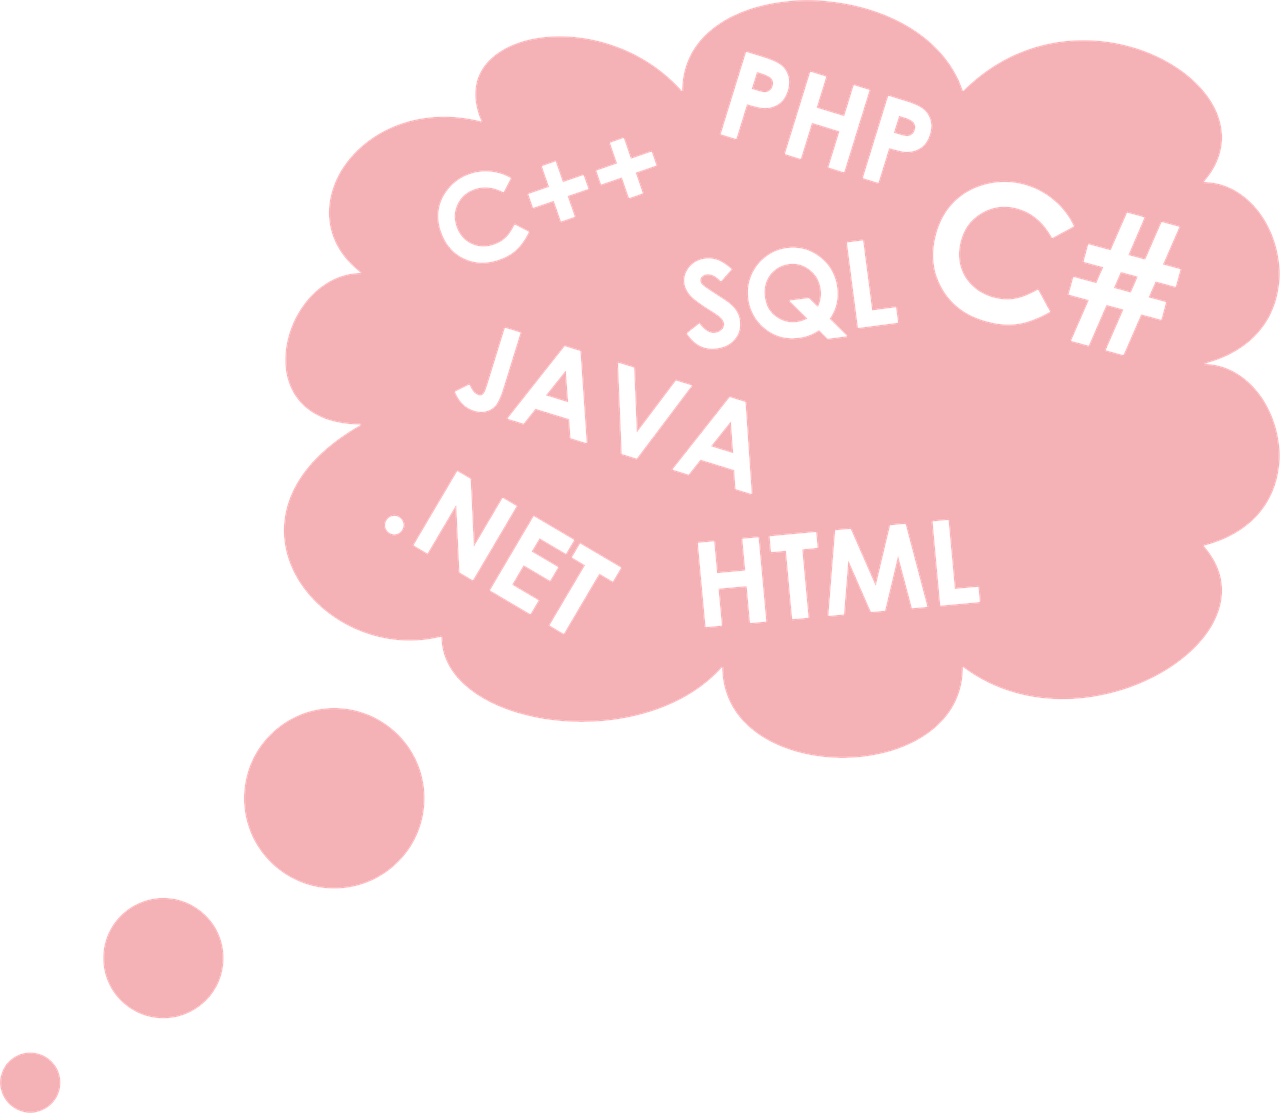 Debesis, Programuotojas, Programavimo Kalba, Programavimas, Kompiuteris, C, Php, Sql, Java, Html